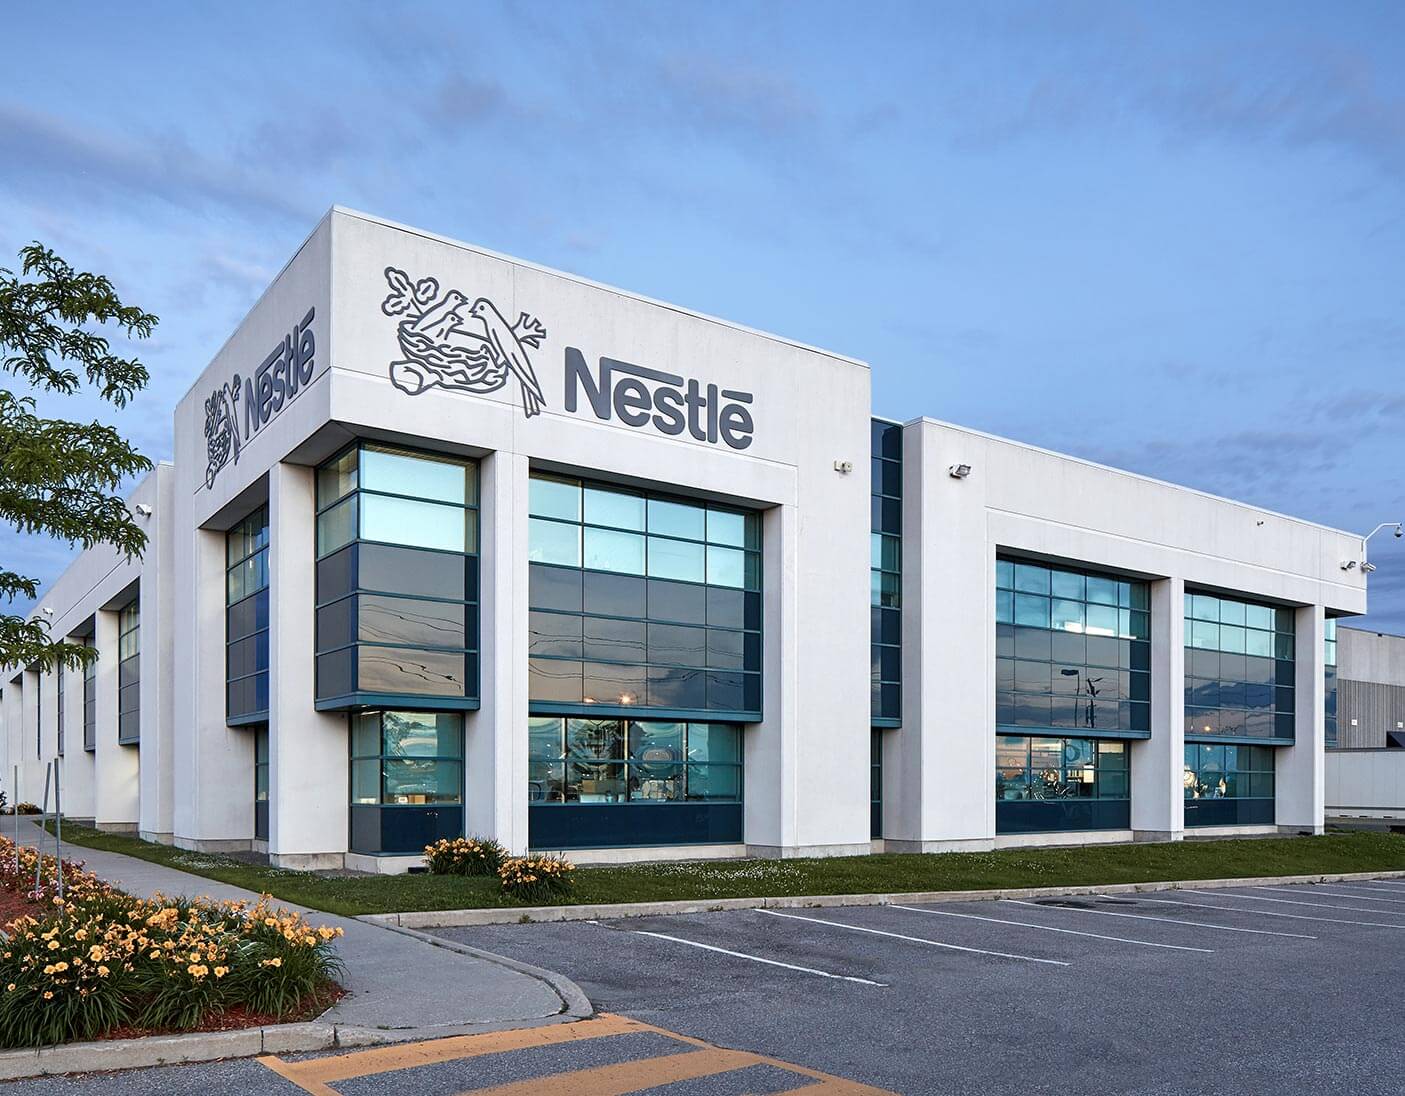 Nestlé malaysia office